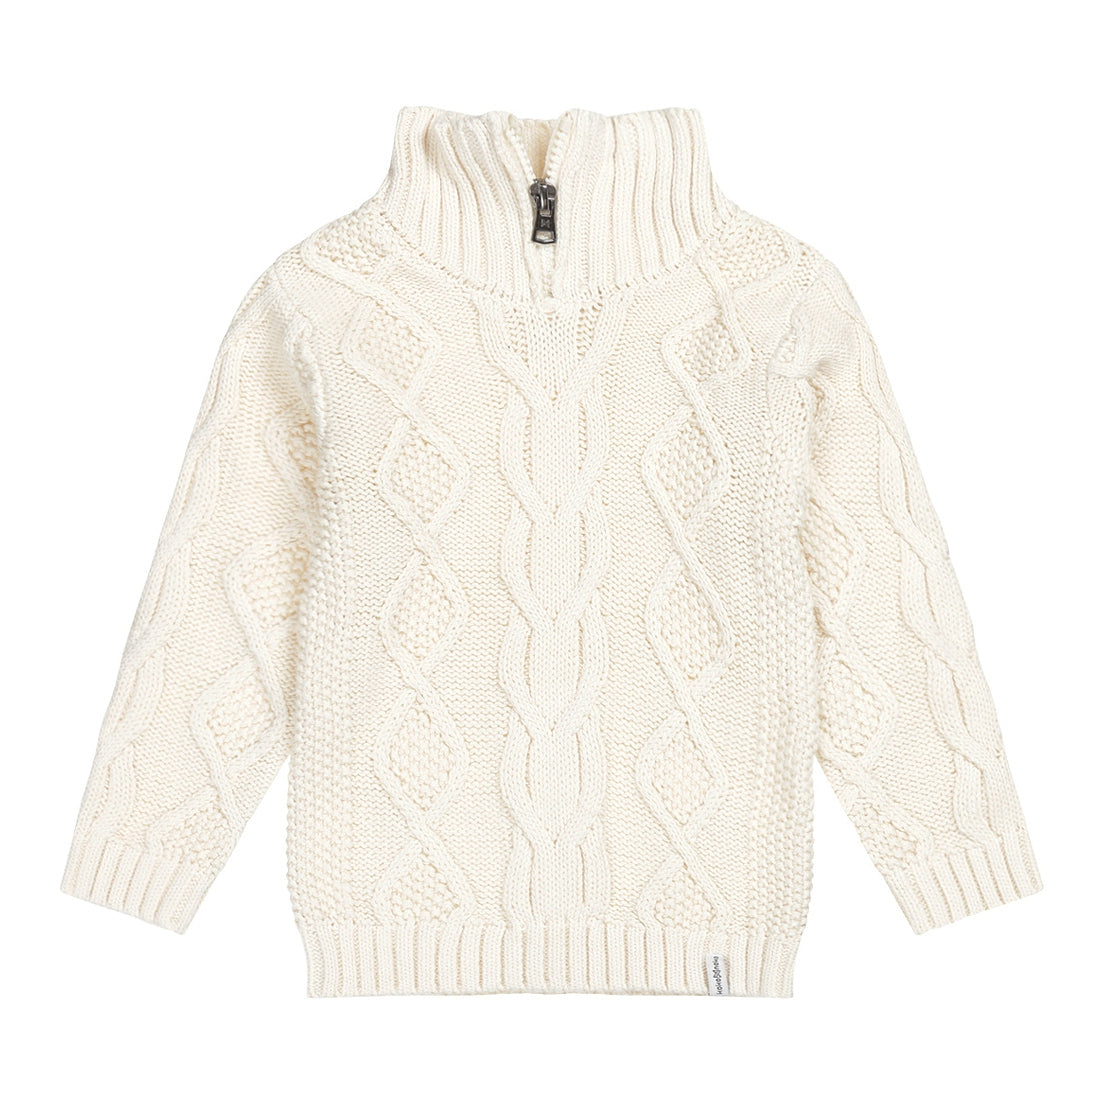 Jongens Sweater ls with collar van Koko Noko in de kleur  Off white in maat 128.